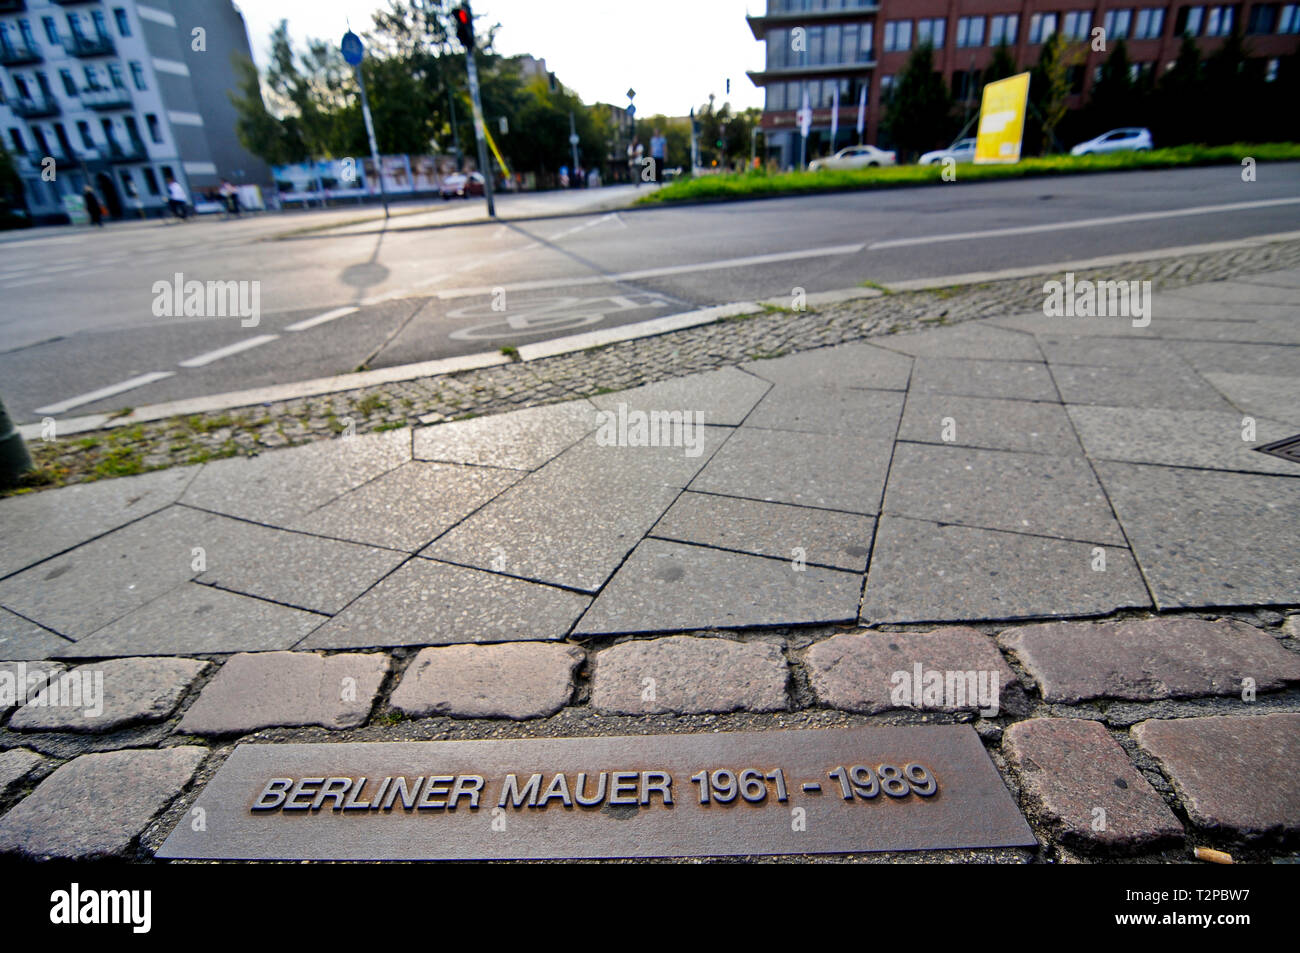 Berlin wall mark, Germany Stock Photo